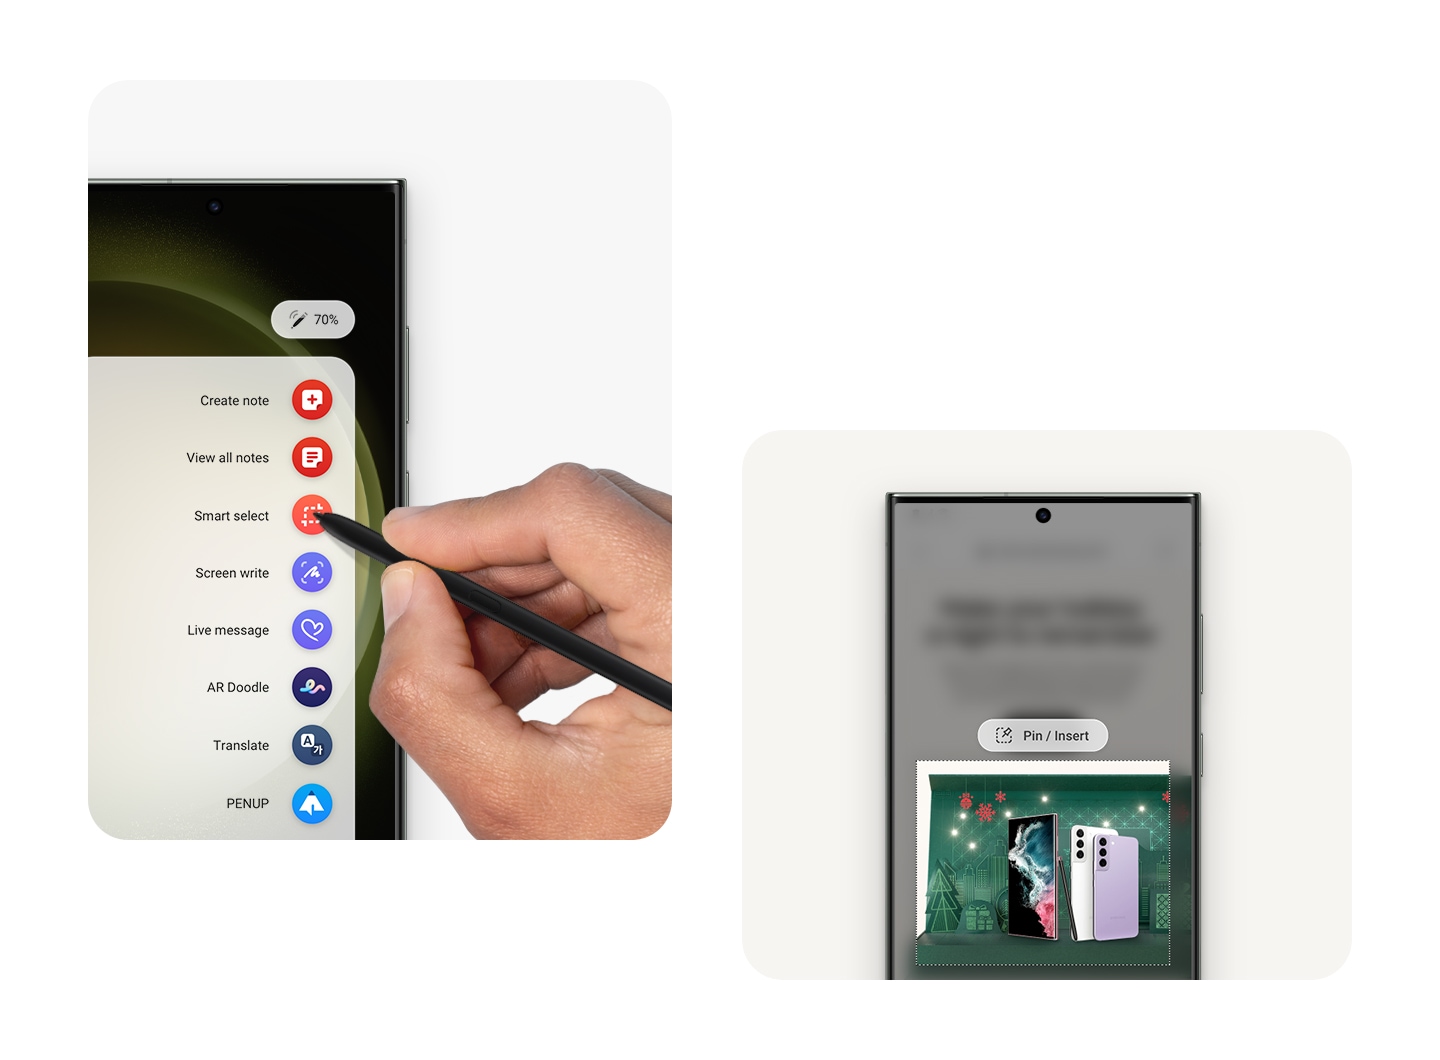 Der Bildschirm zeigt das Air Command-Menü mit verschiedenen S Pen-Funktionen an. Auf einem anderen Bildschirm wird ein Teil einer Samsung-Webseite mit der Smart Select-Funktion des S Pen quadratisch hervorgehoben.